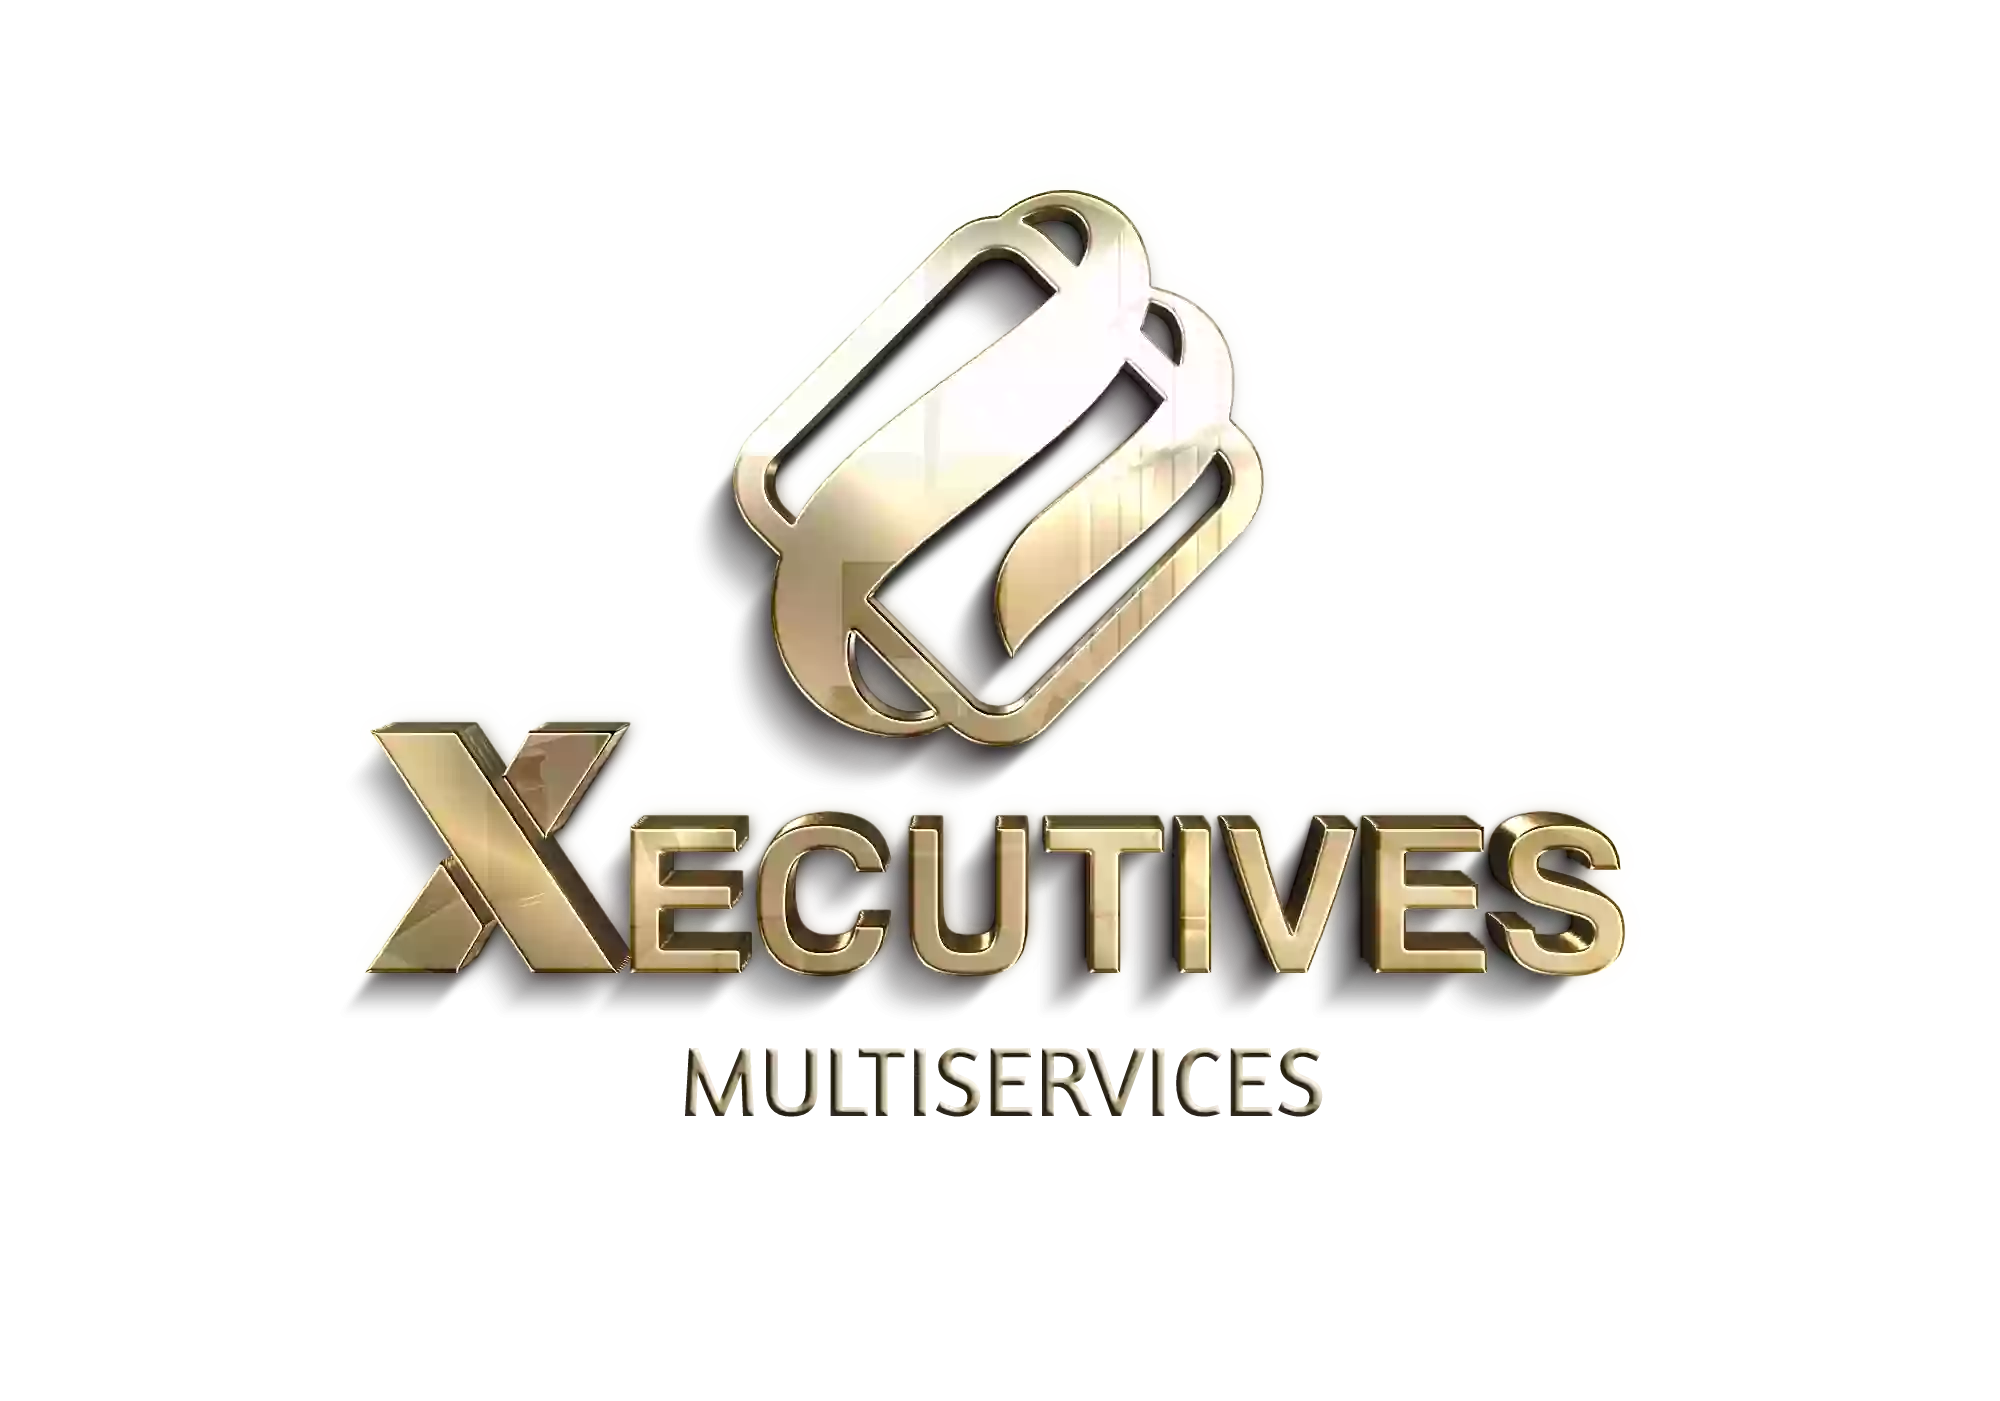 Xecutives Multiservices